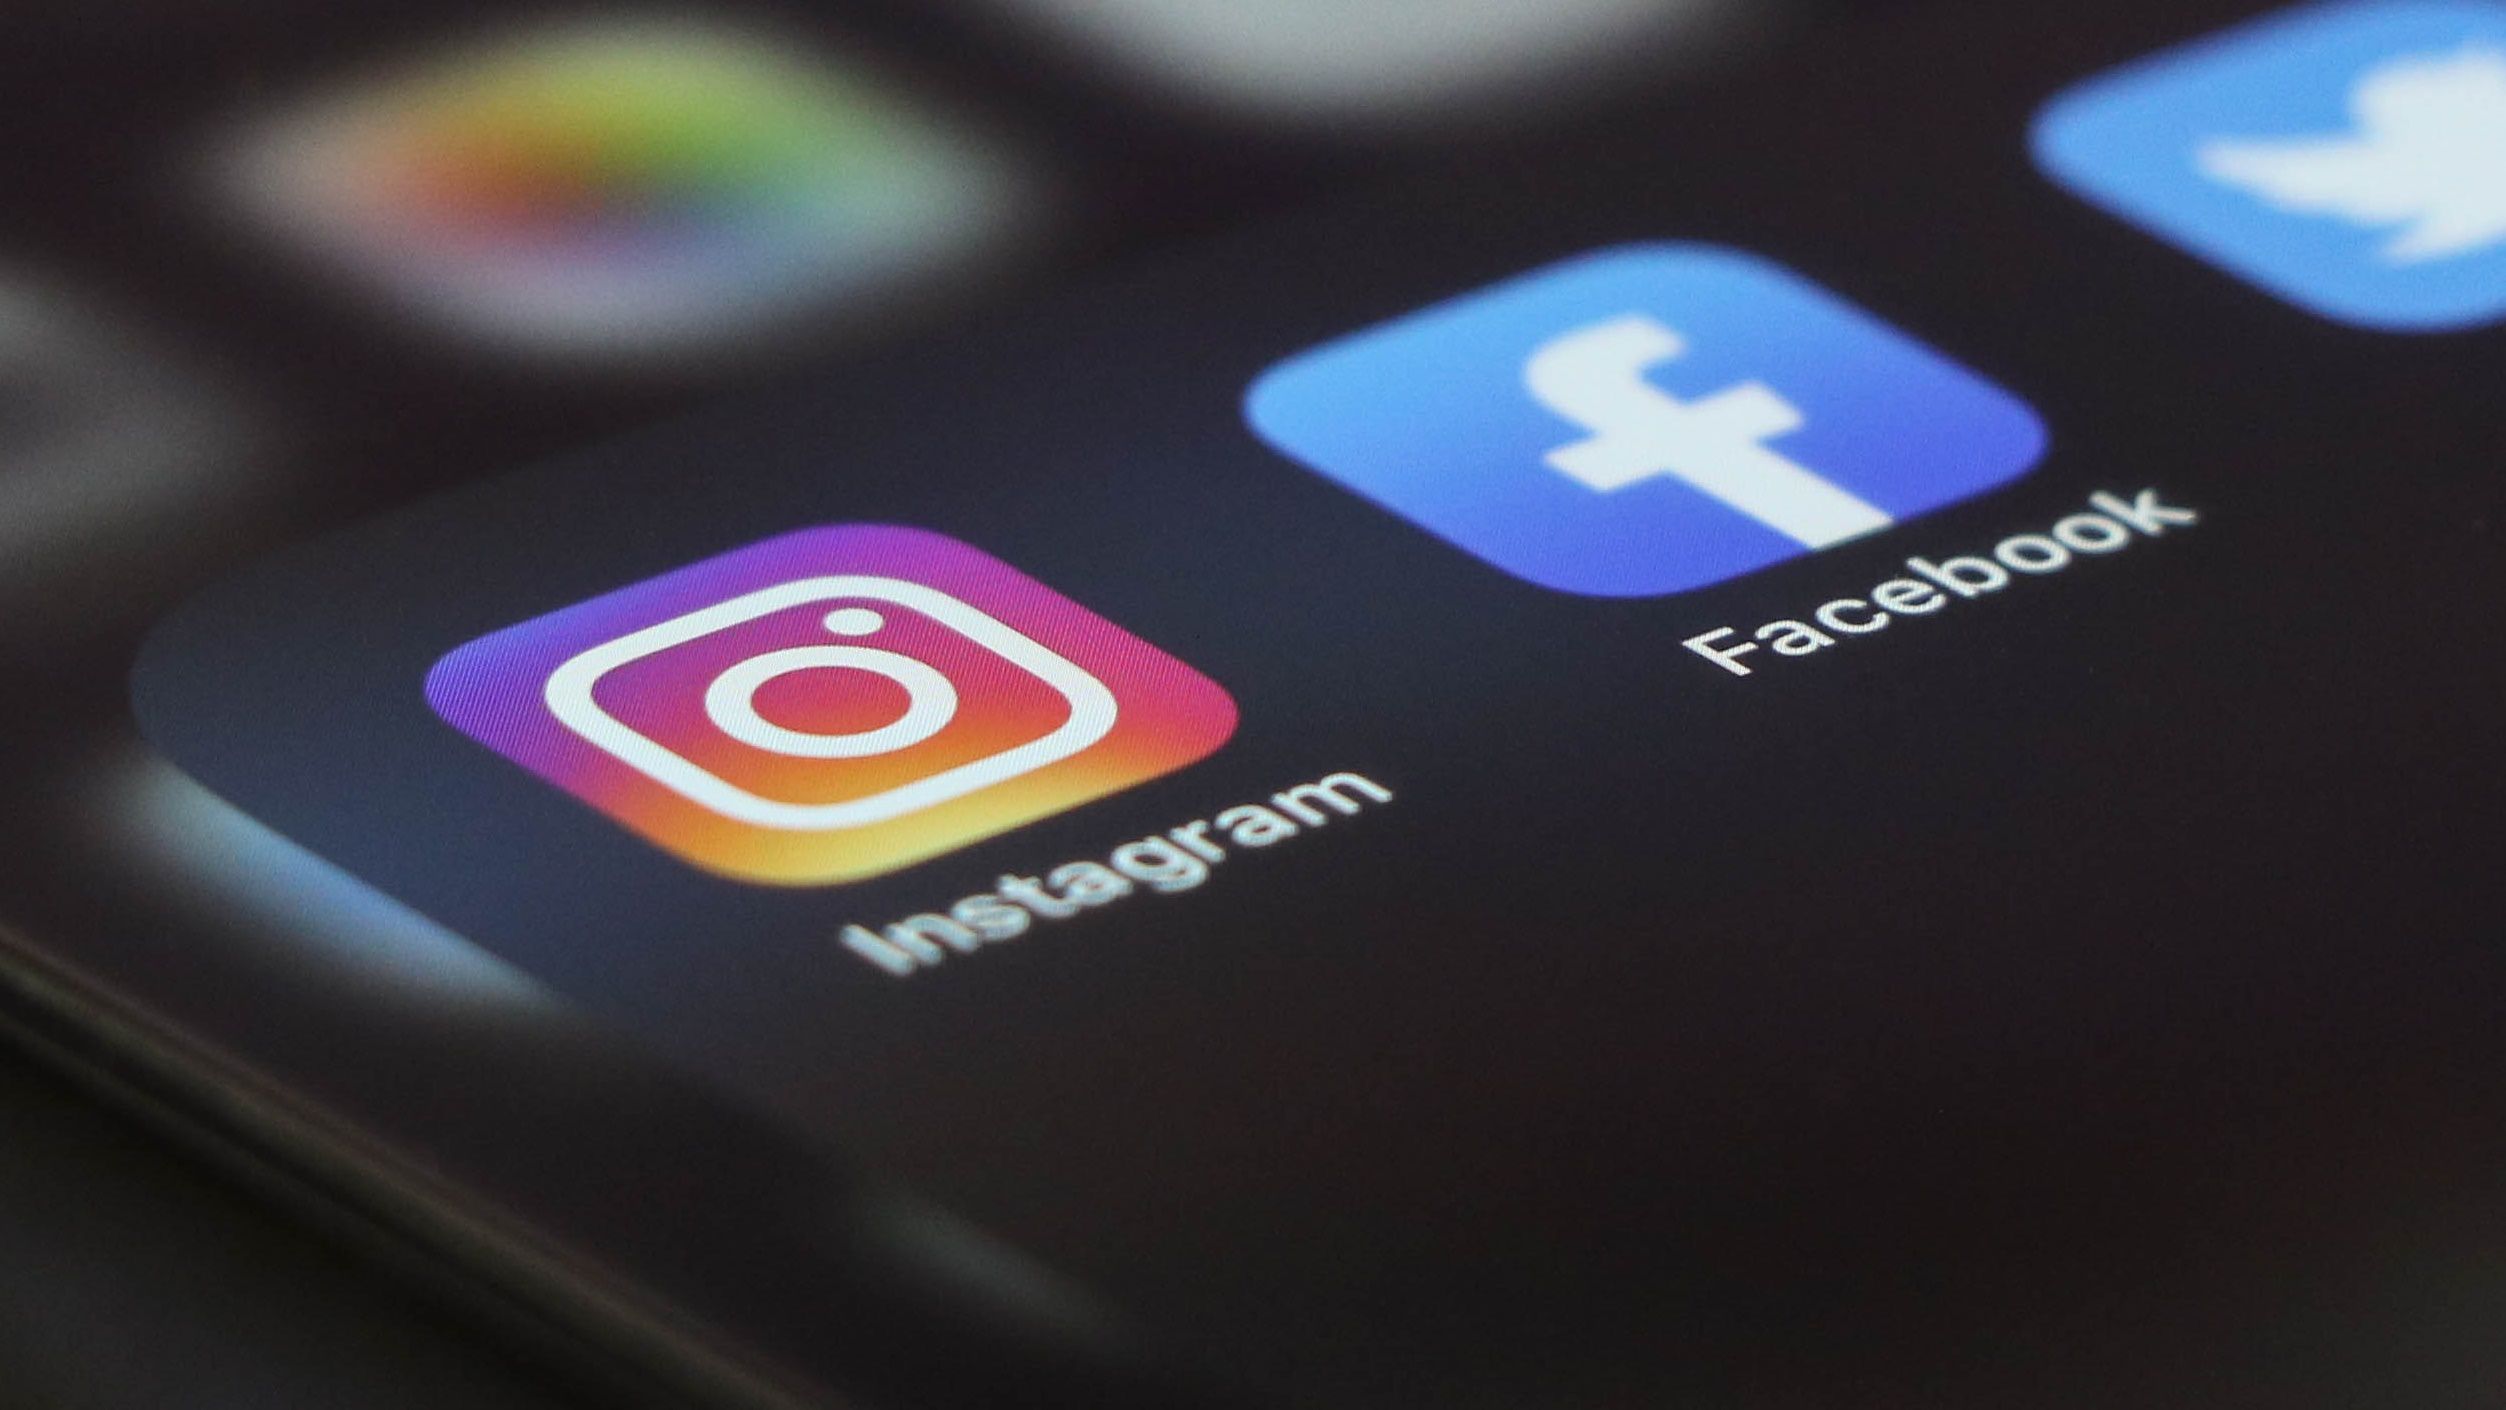 Como entrar no Facebook pelo Instagram com a Central de Contas Meta